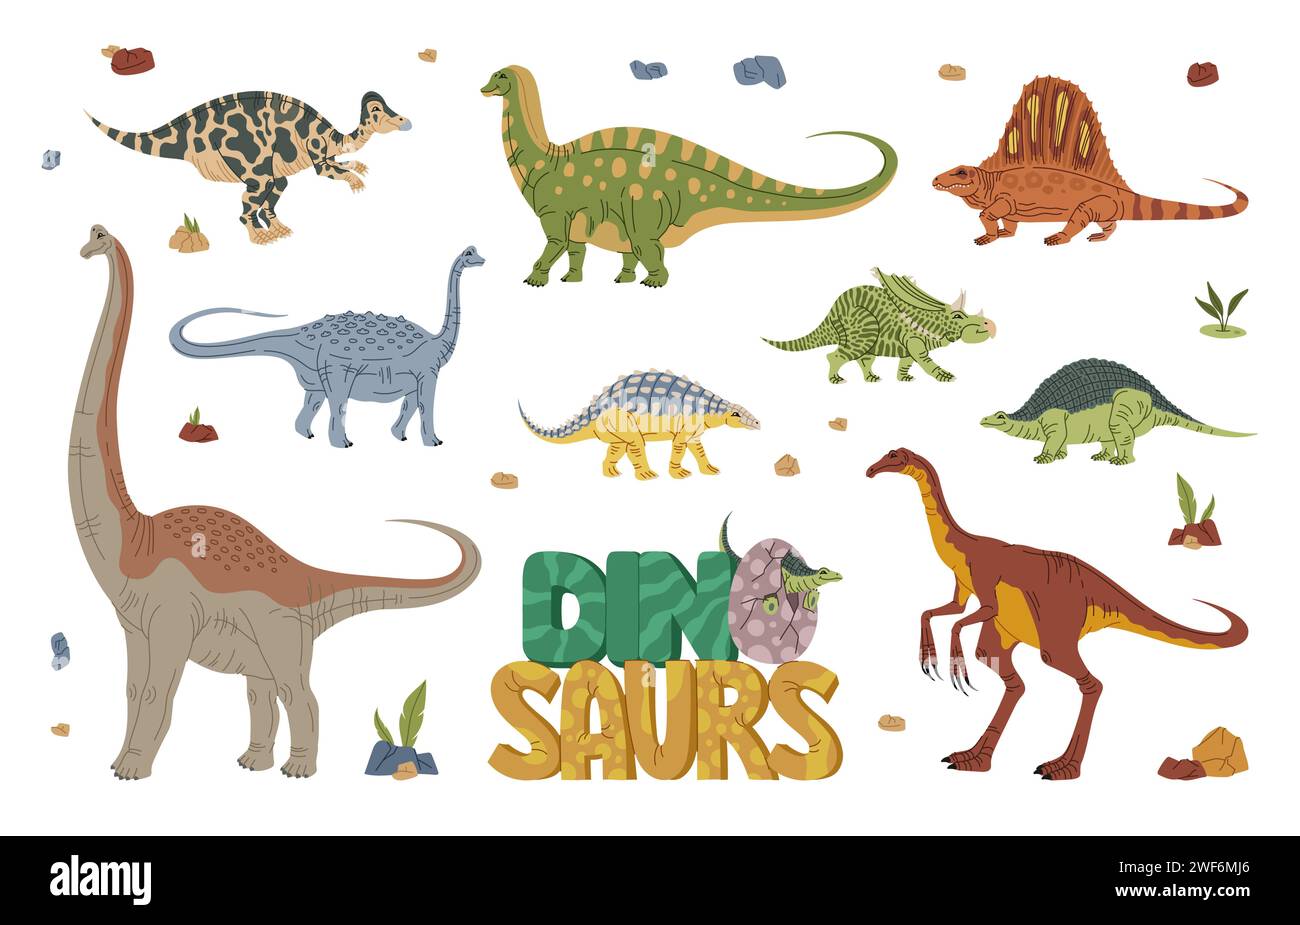 Dinosaures, personnages de dessins animés et reptiles Jurassiques pour la collection vectorielle de parc de dinosaures. Espèces drôles de dinosaures ou de dinosaures pour l'éducation préhistorique des enfants, reptiles éteints jeu du monde et lézards monstres Illustration de Vecteur